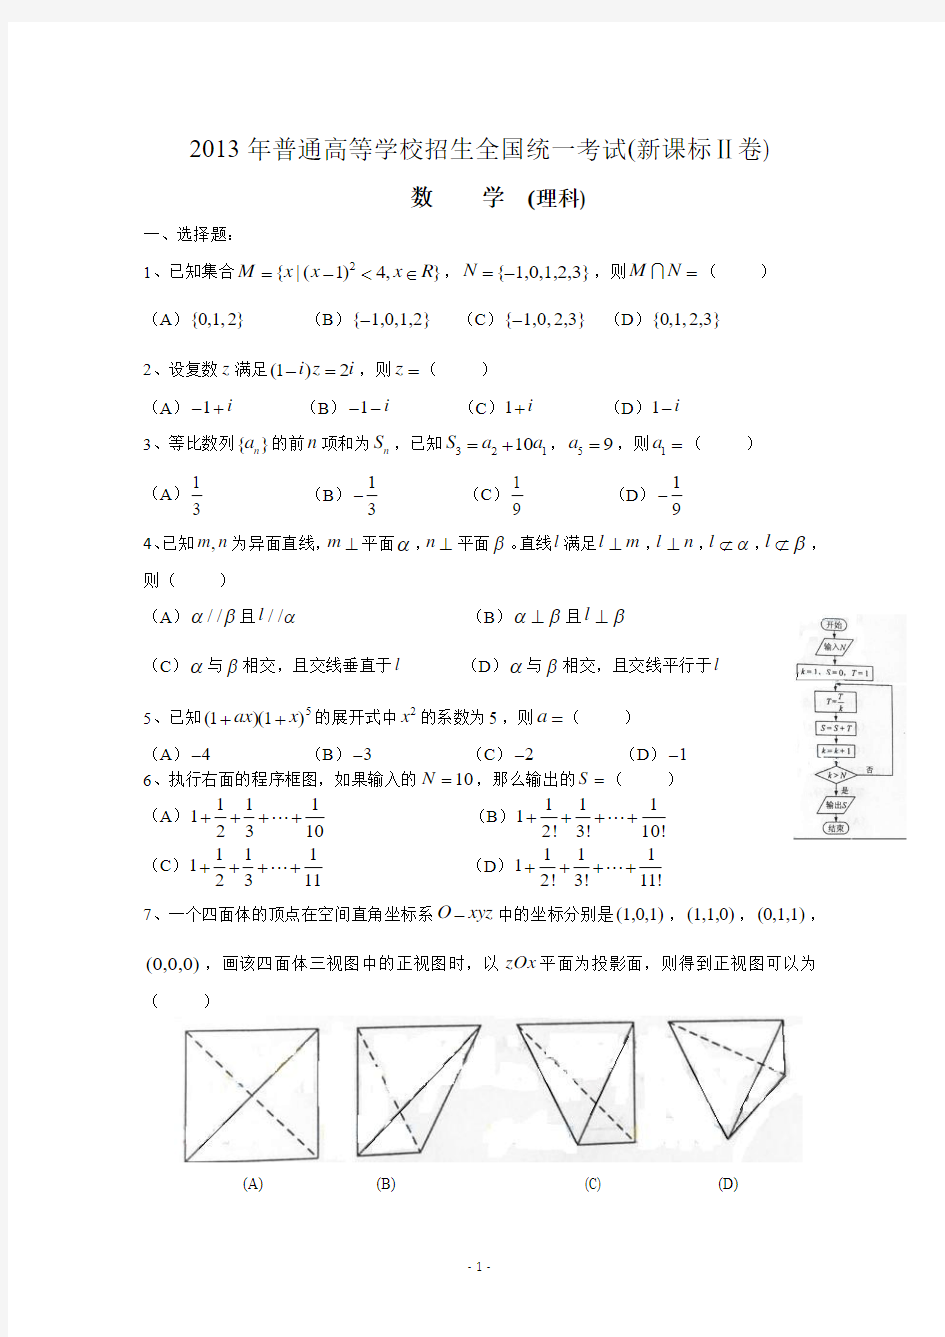 2013年高考真题——理科数学(新课标II卷)